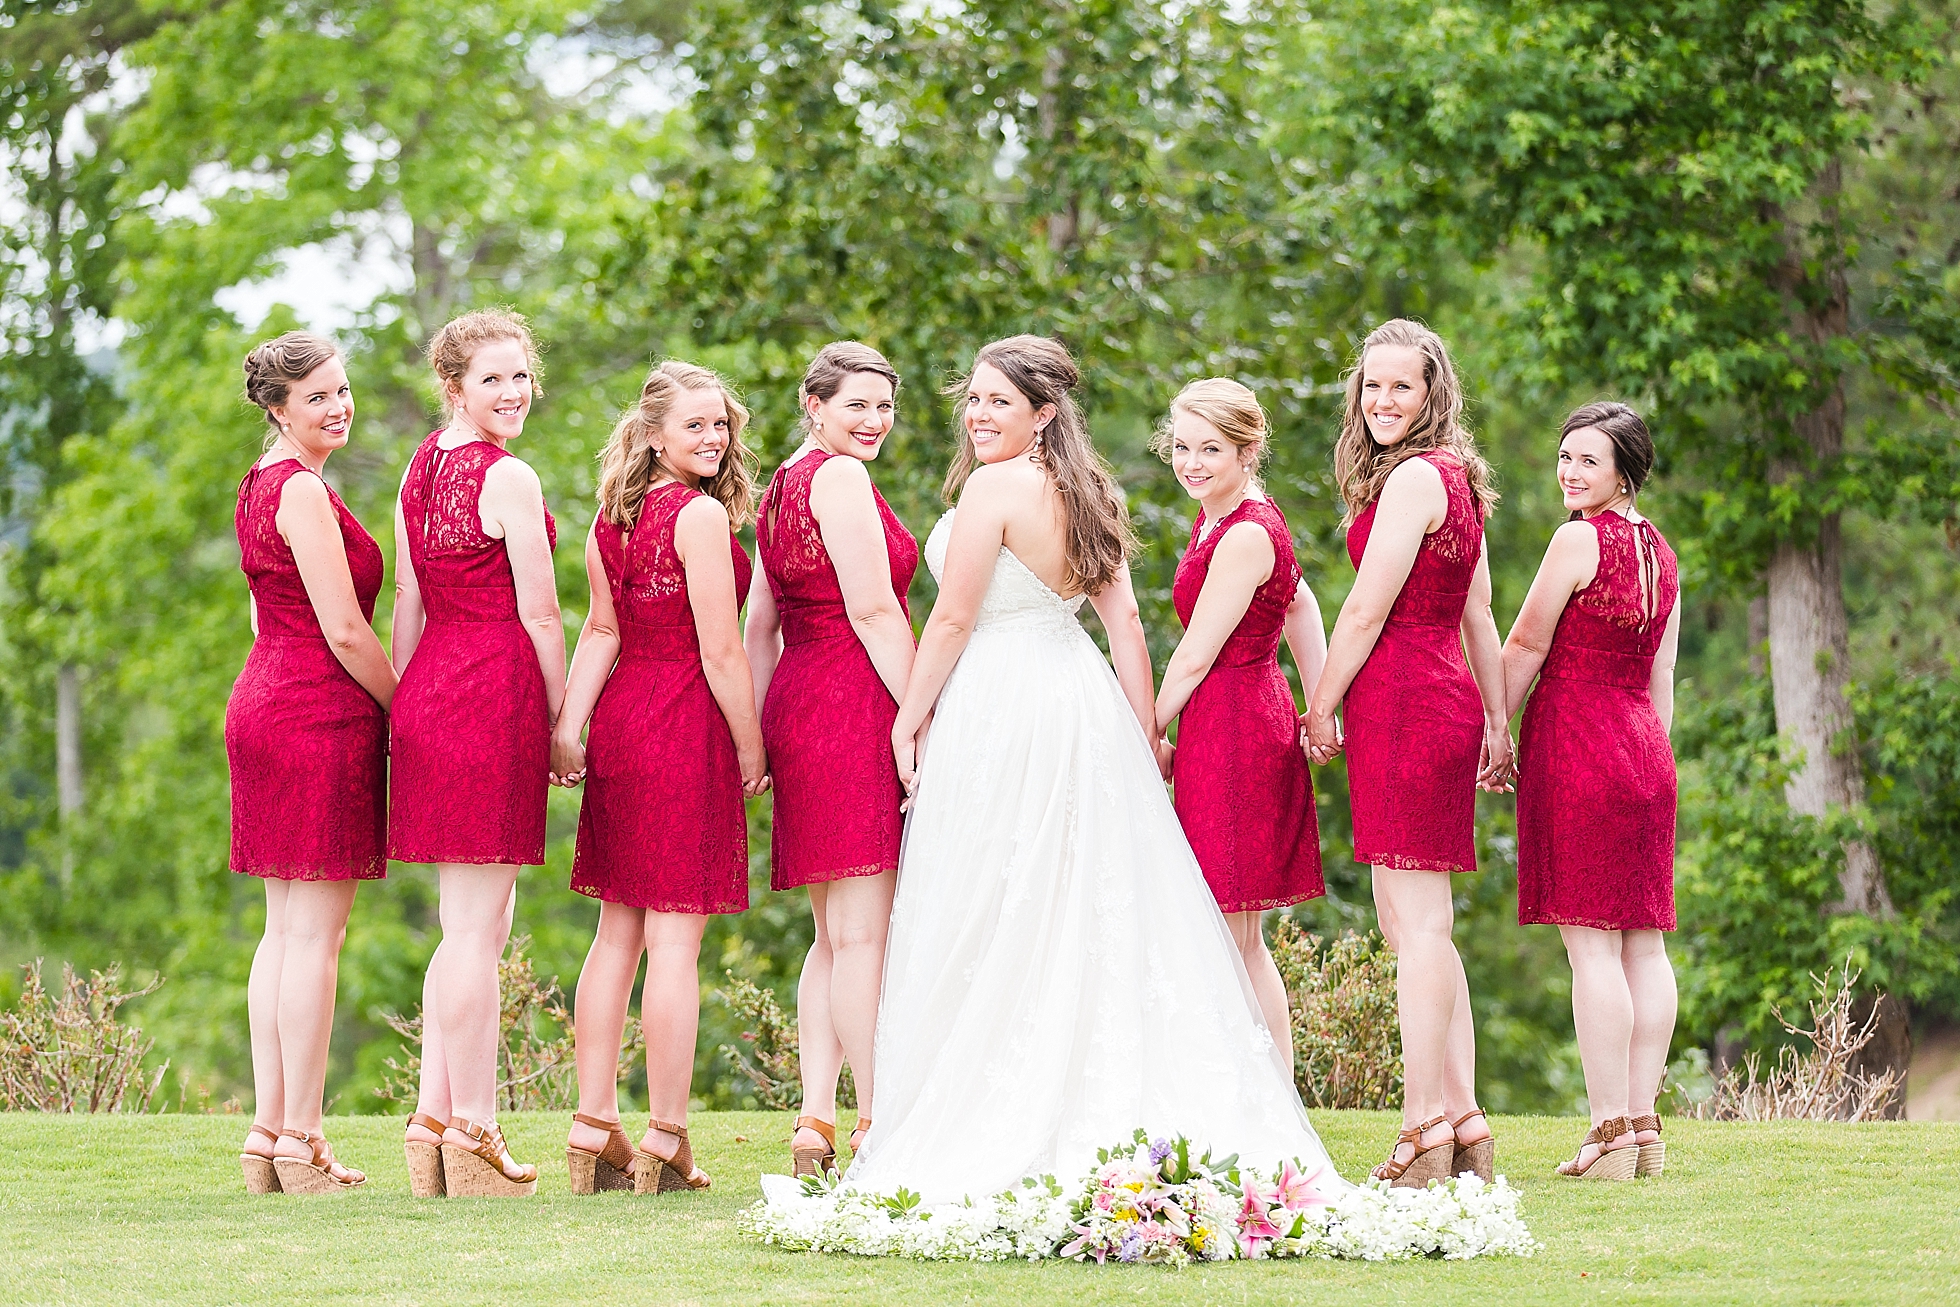 berry bridesmaids dresses athens